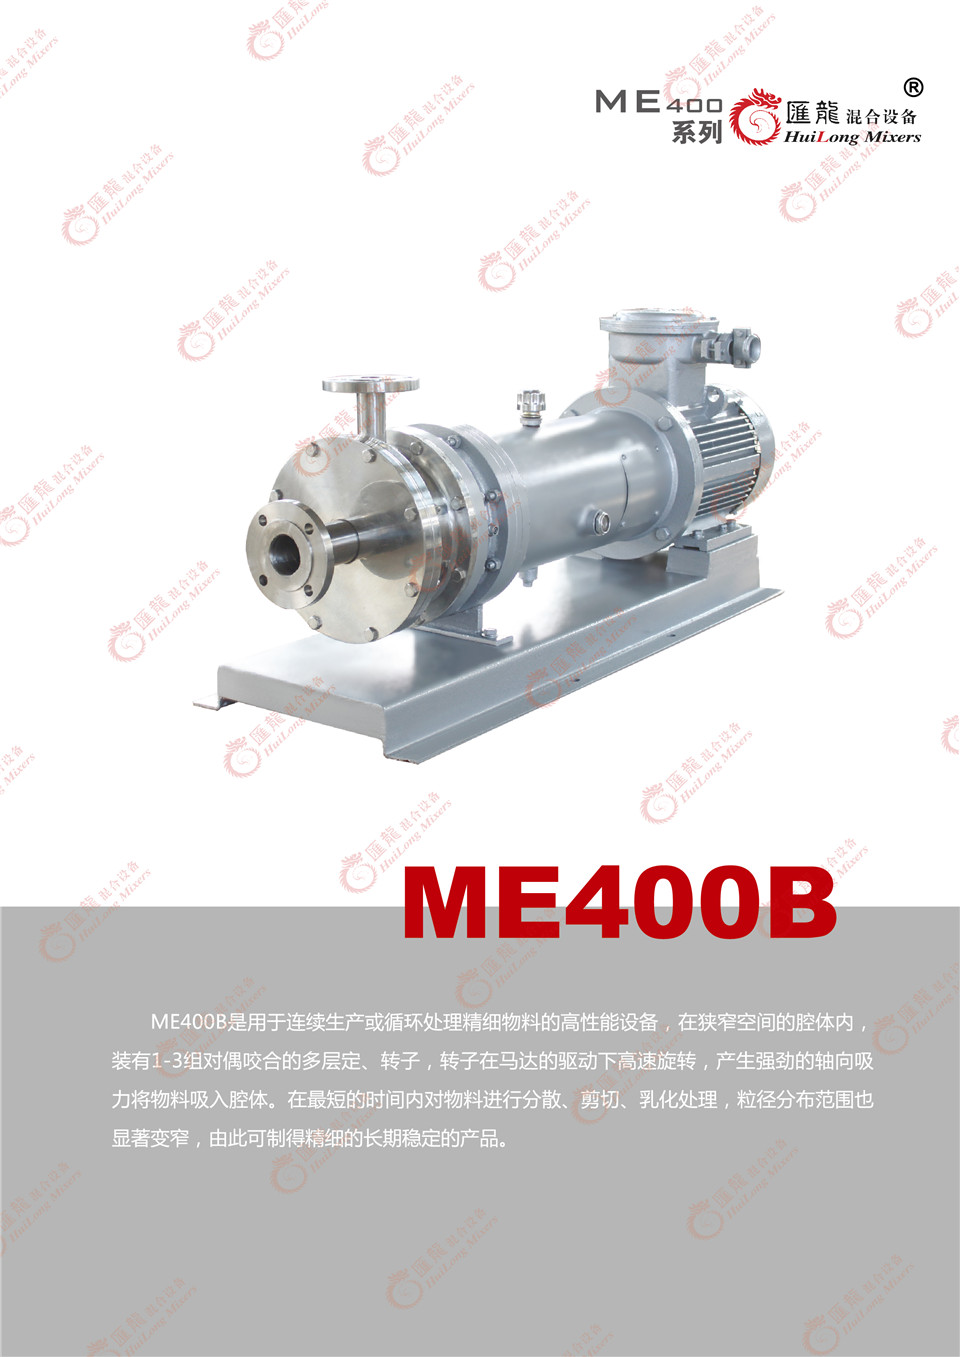 “ME400B型乳化机”/